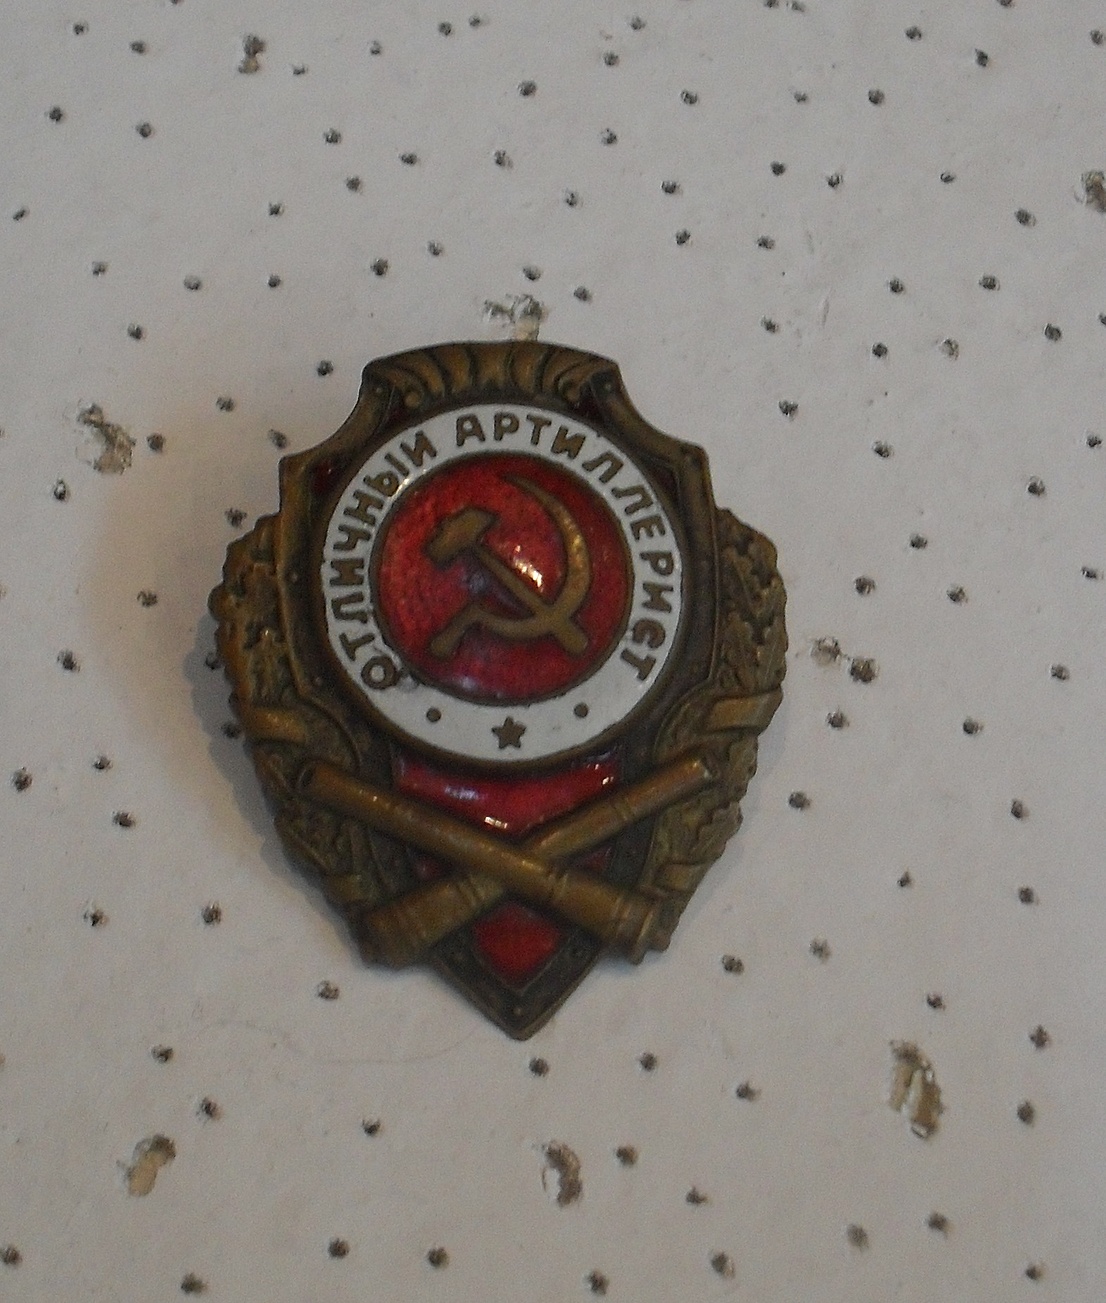 Нагрудный знак «Отличный артиллерист» П.Г. Артамонова